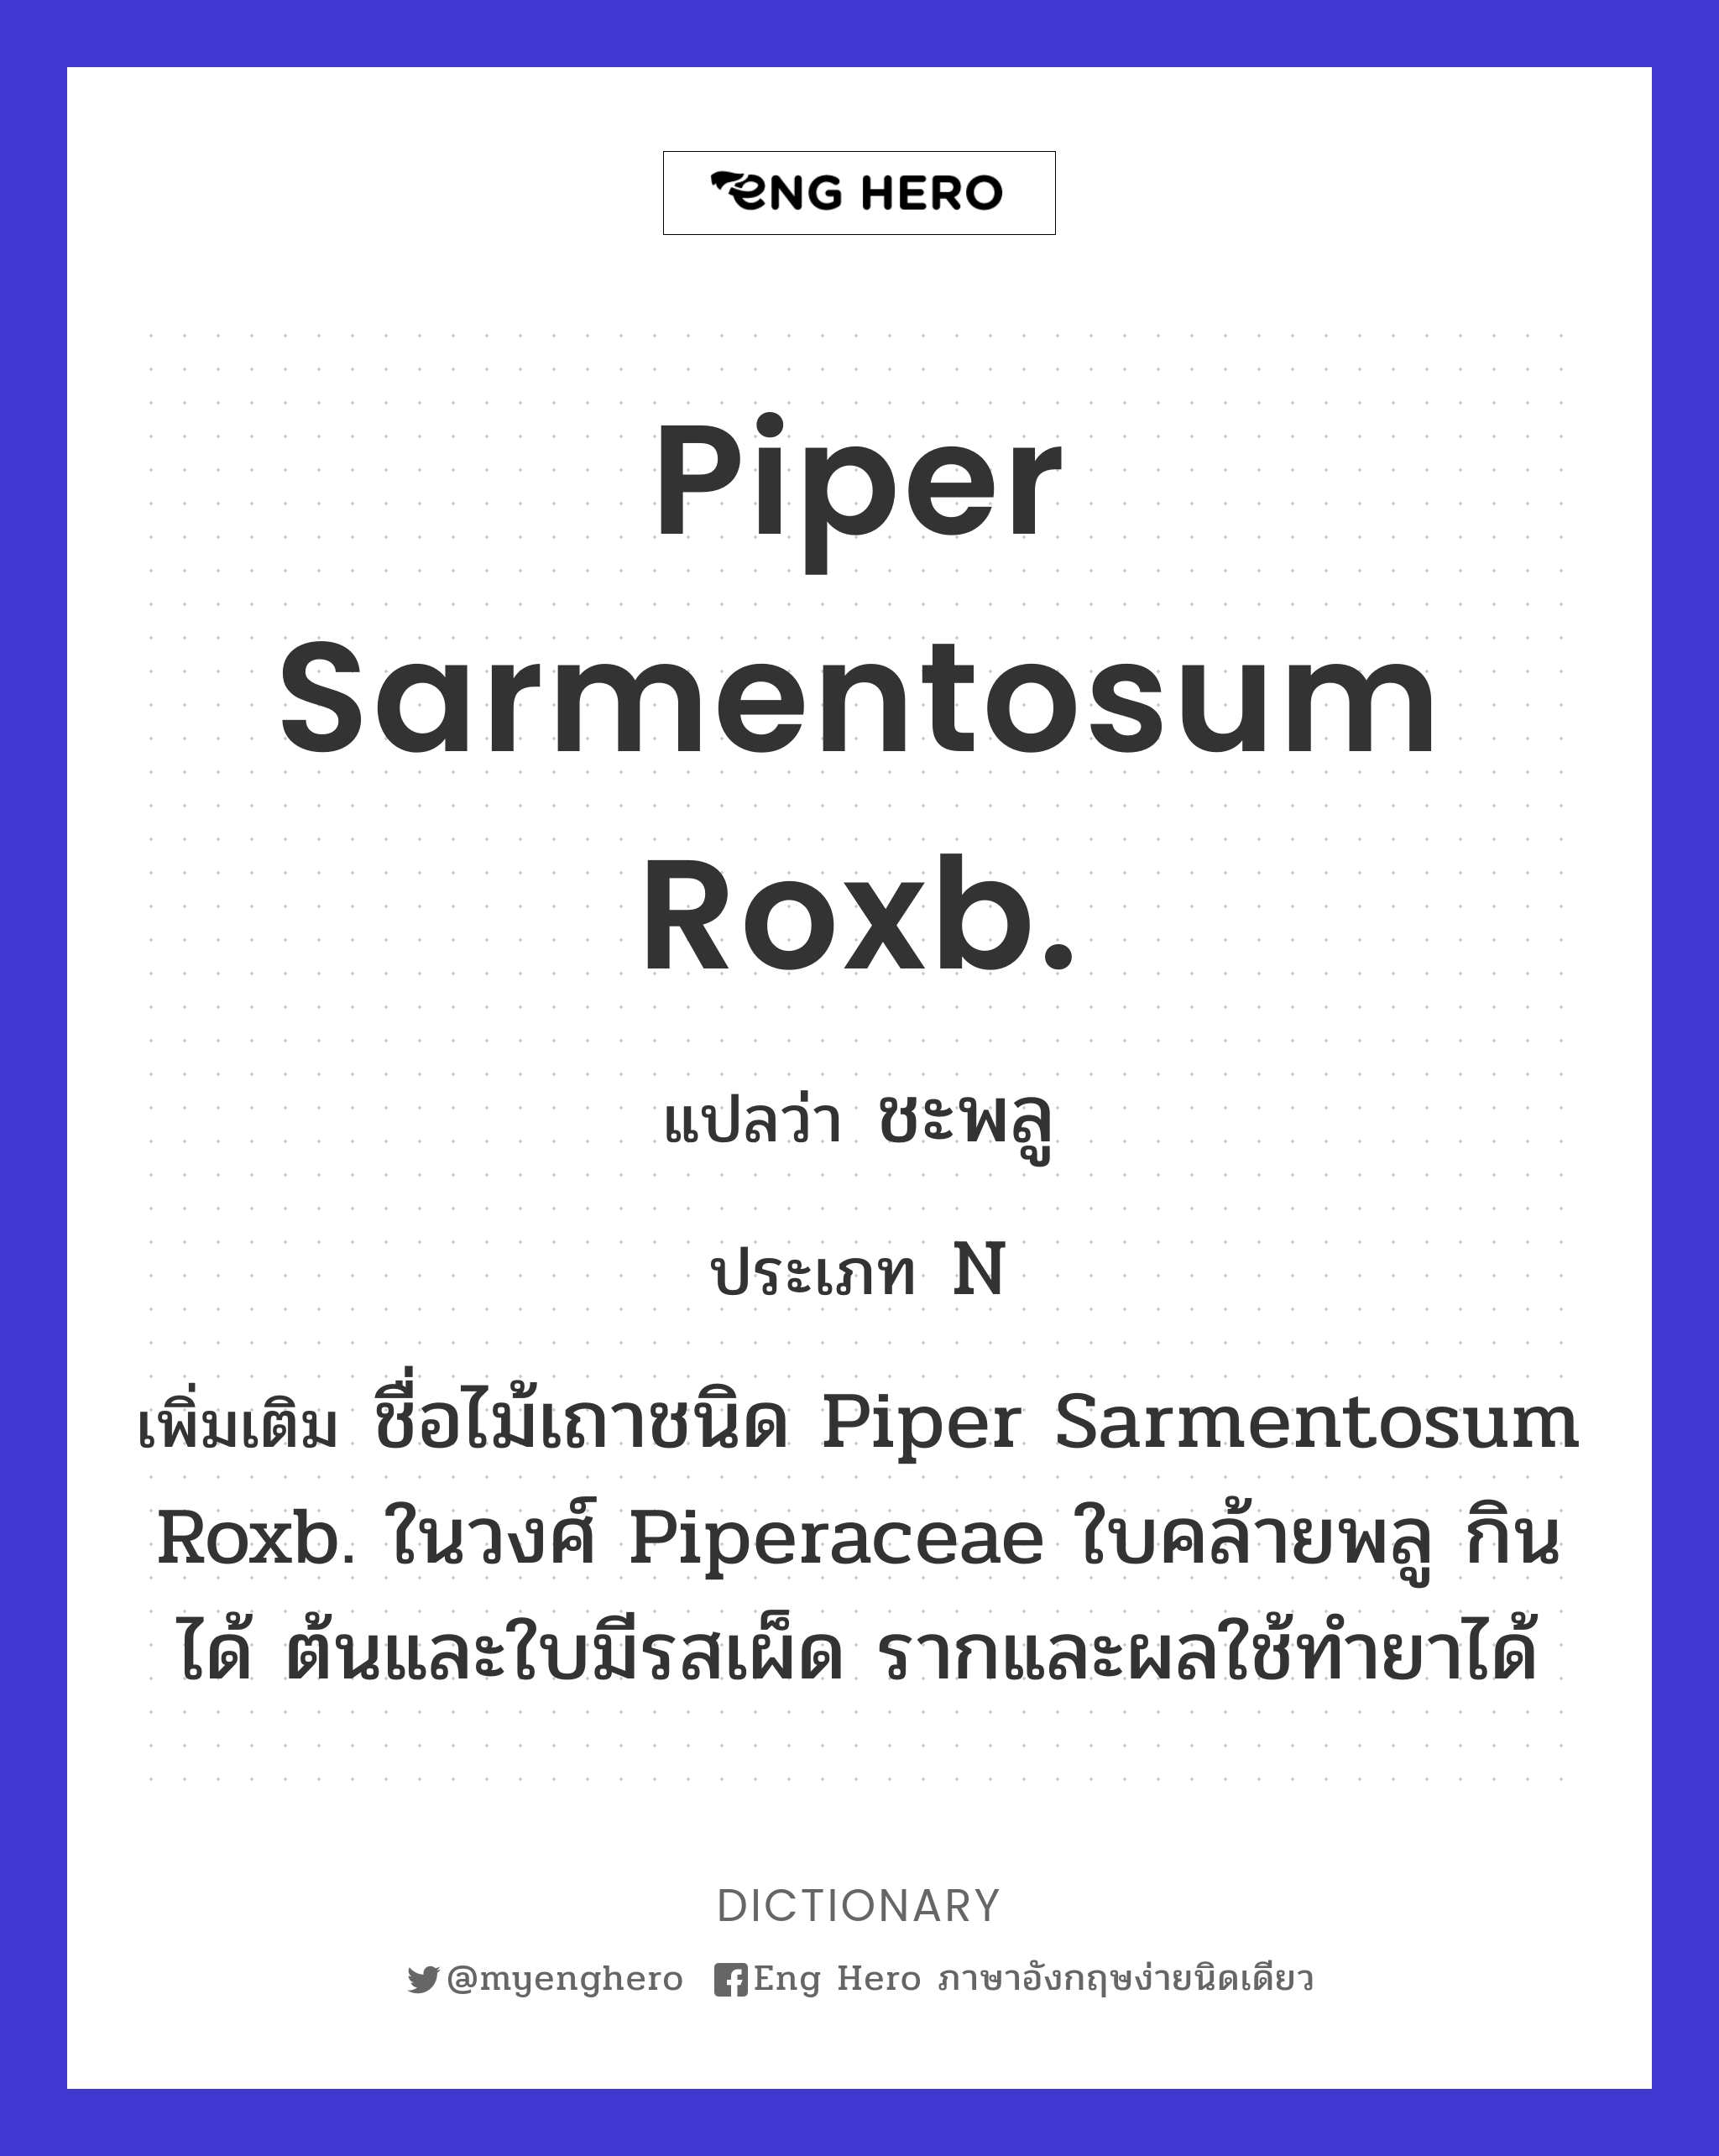 Piper sarmentosum Roxb.